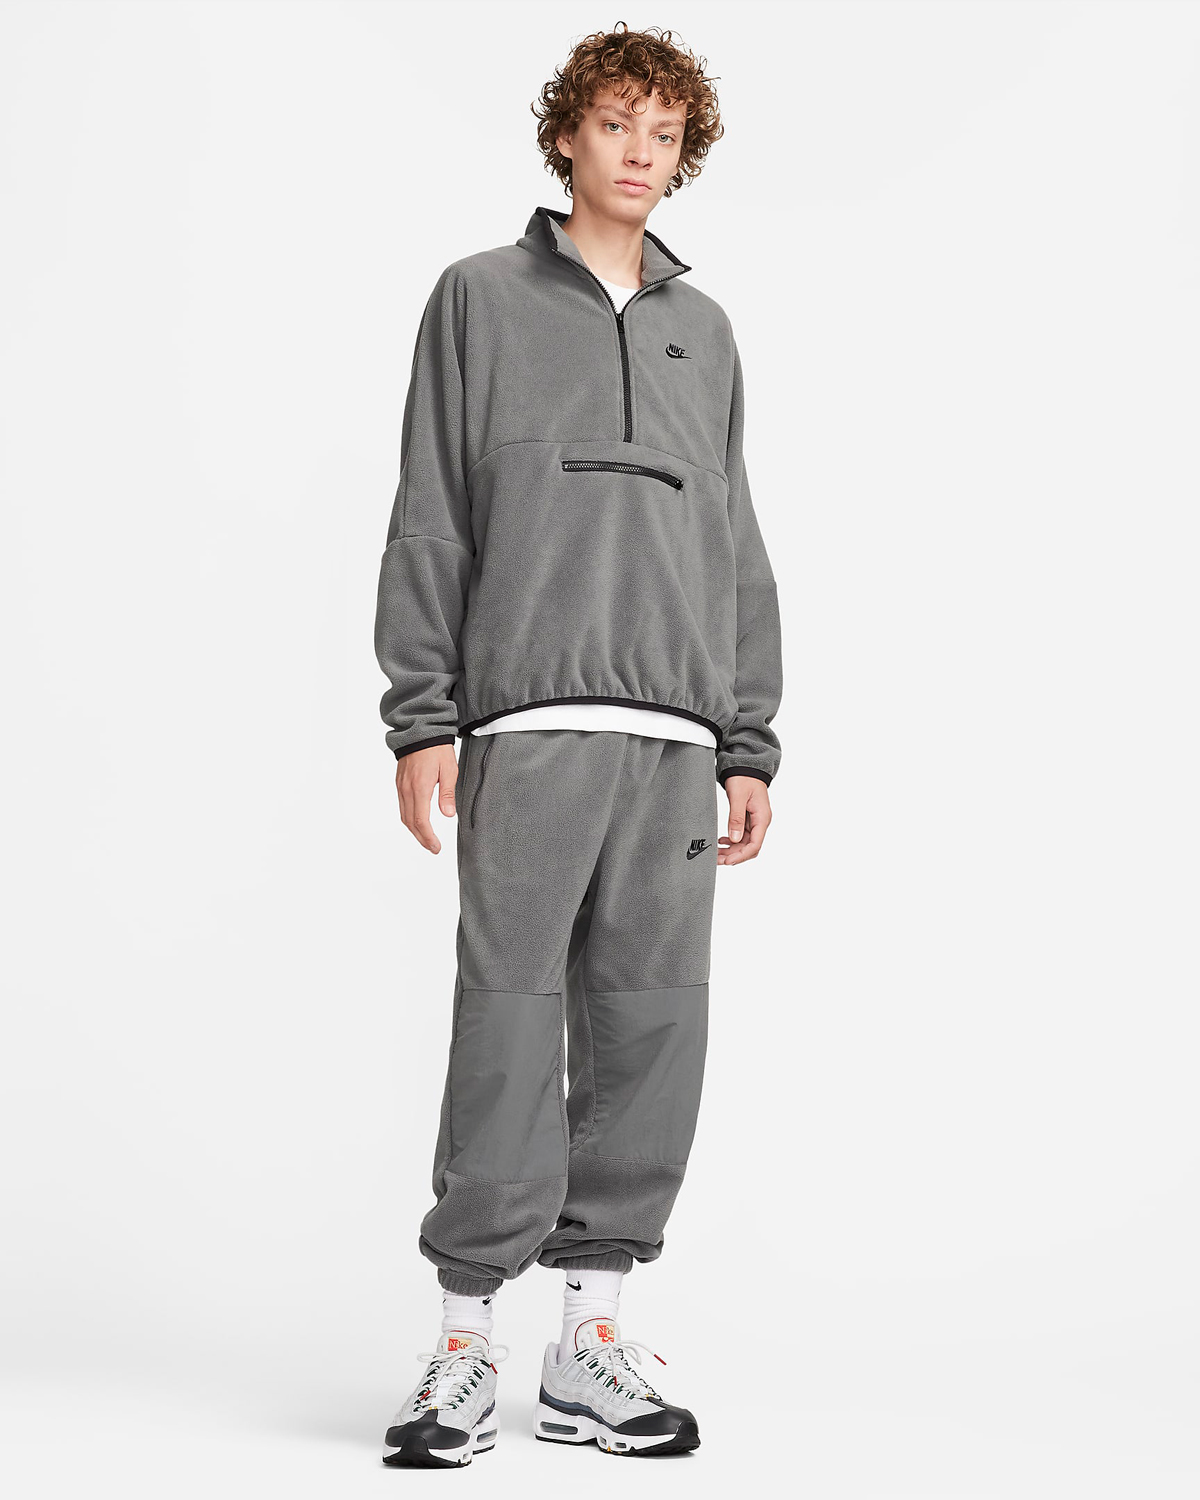 Nike-Club-Fleece-Polar-Fleece-Top-Pants-Iron-Grey-Outfit